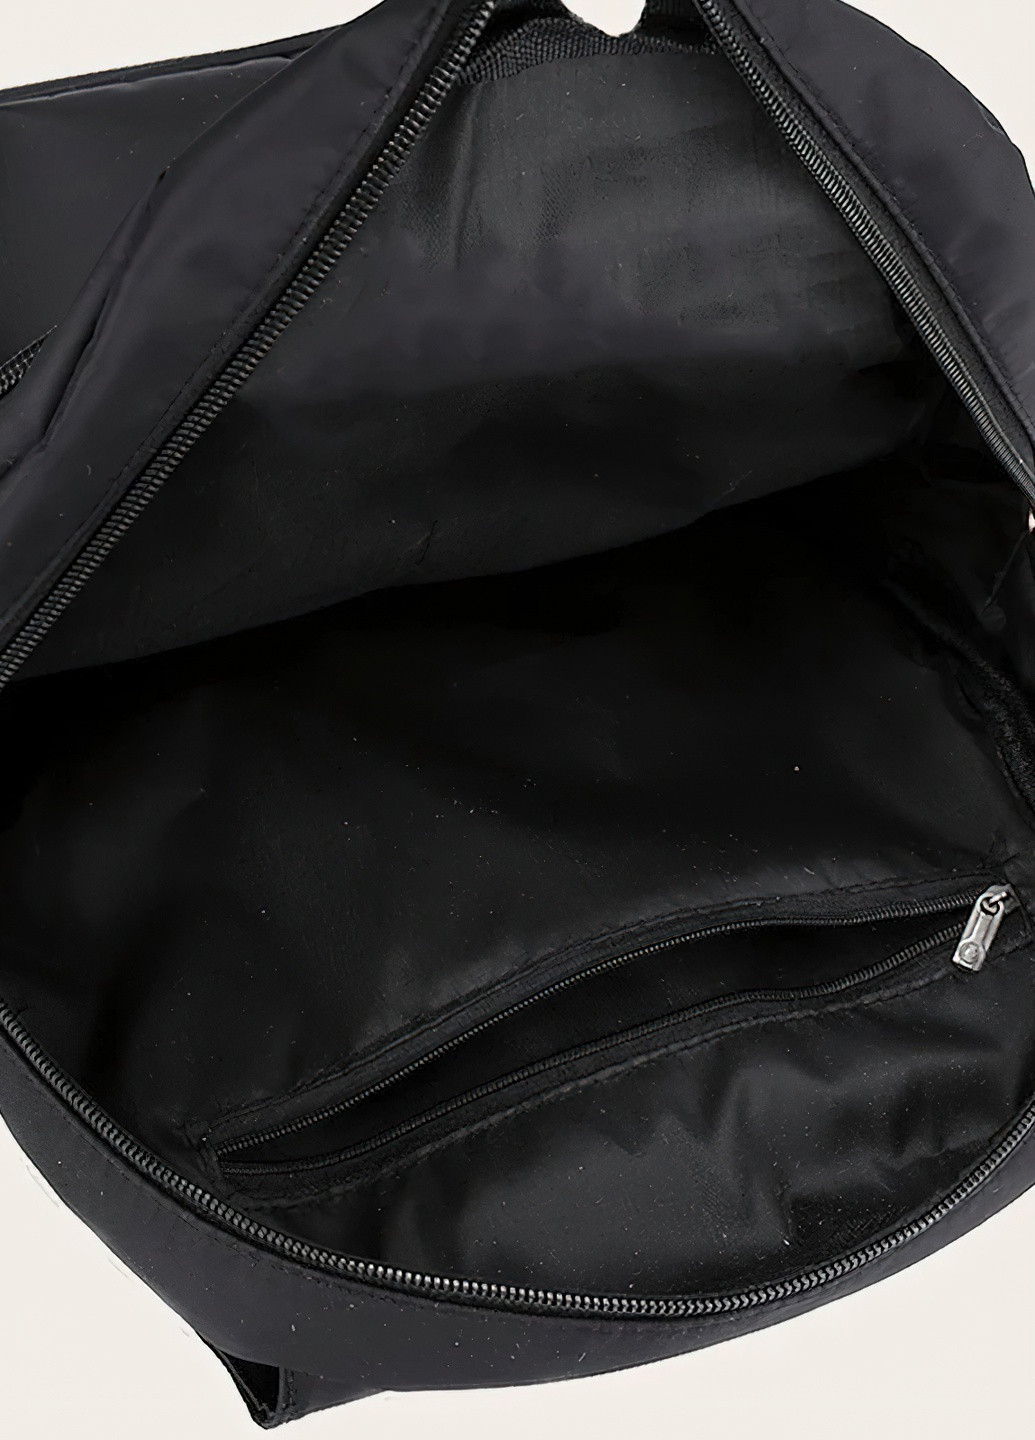 Женский рюкзак сумка городской стиль 8466 Черный 62533 DobraMAMA чёрный кэжуал